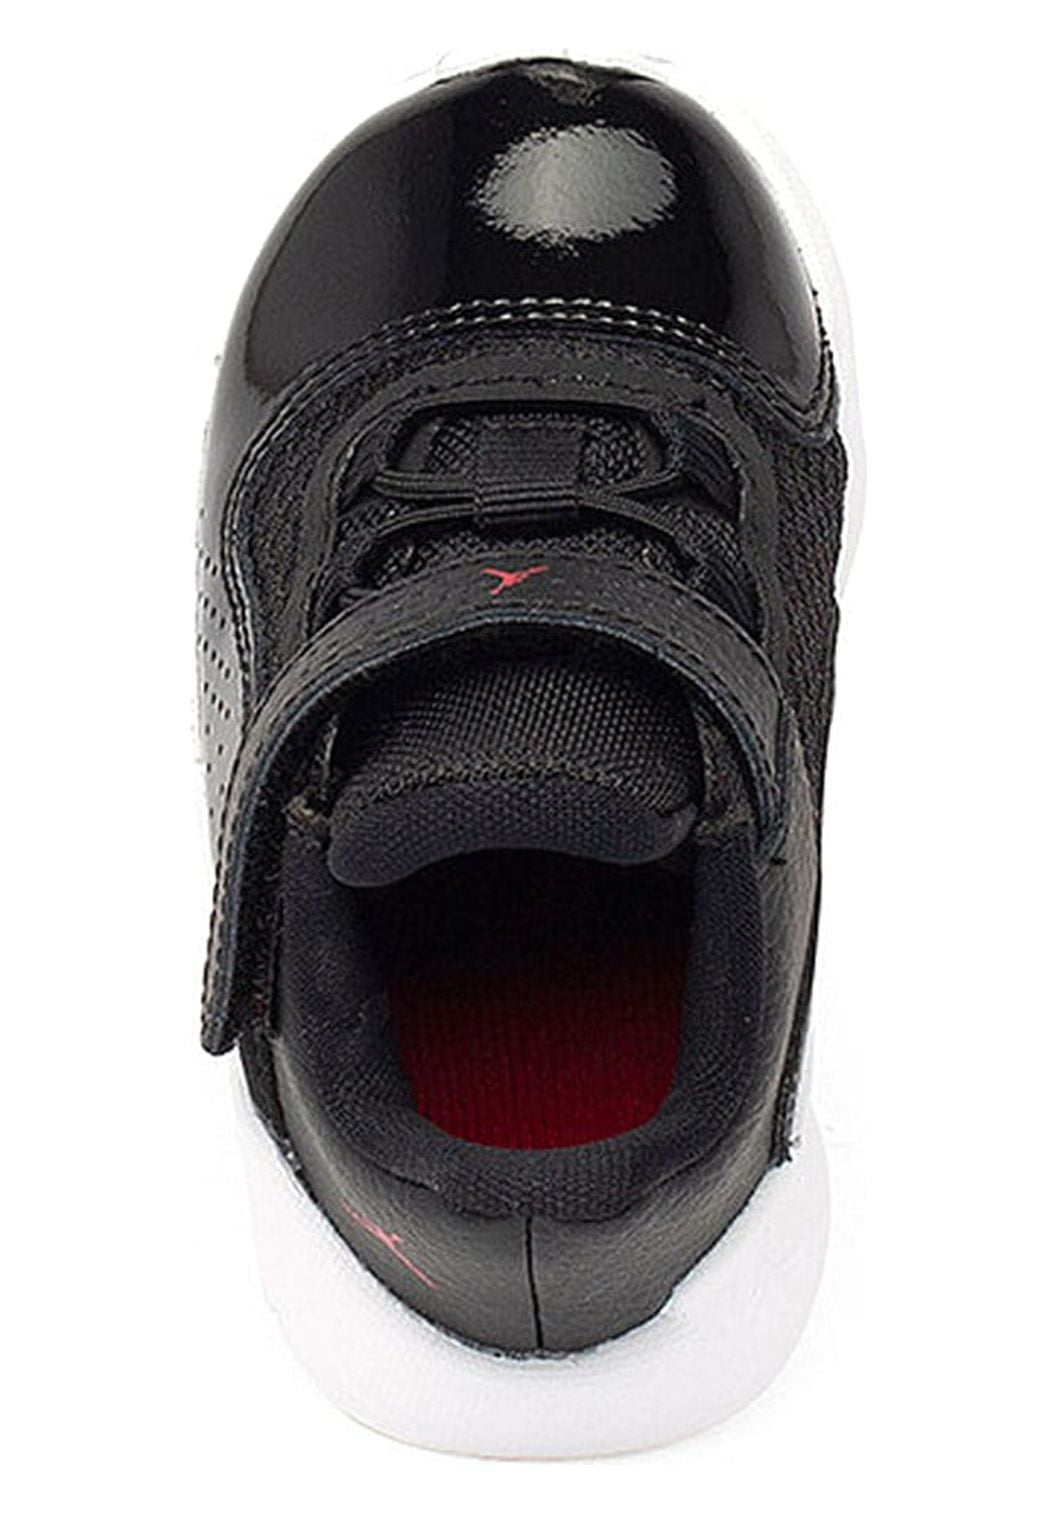 Jordan Jordan 11 Cmft Low Infant/Toddler Shoes Size 5, Color: Black/White